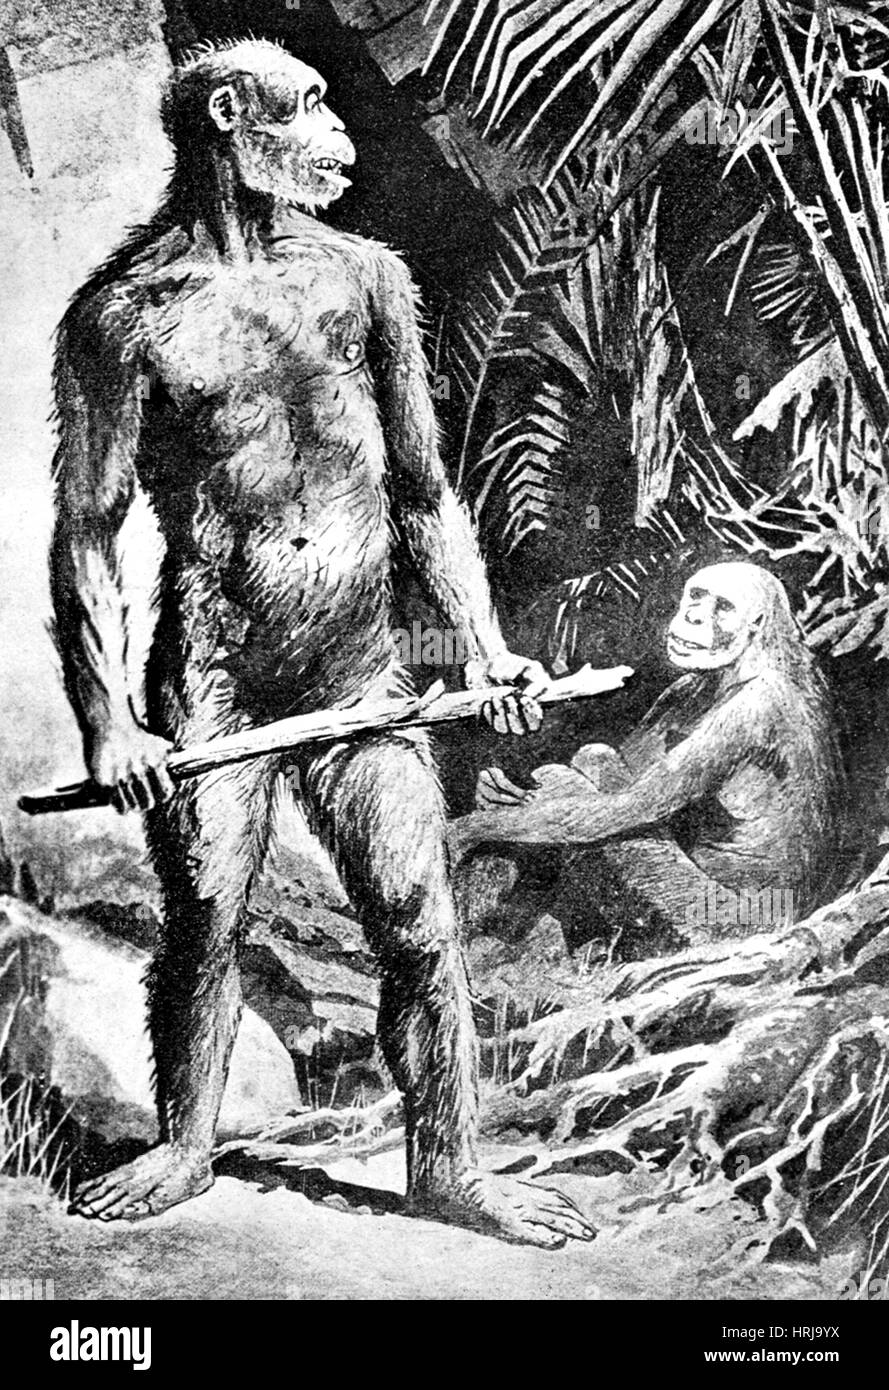 Java preistorico uomo, Homo erectus Foto Stock